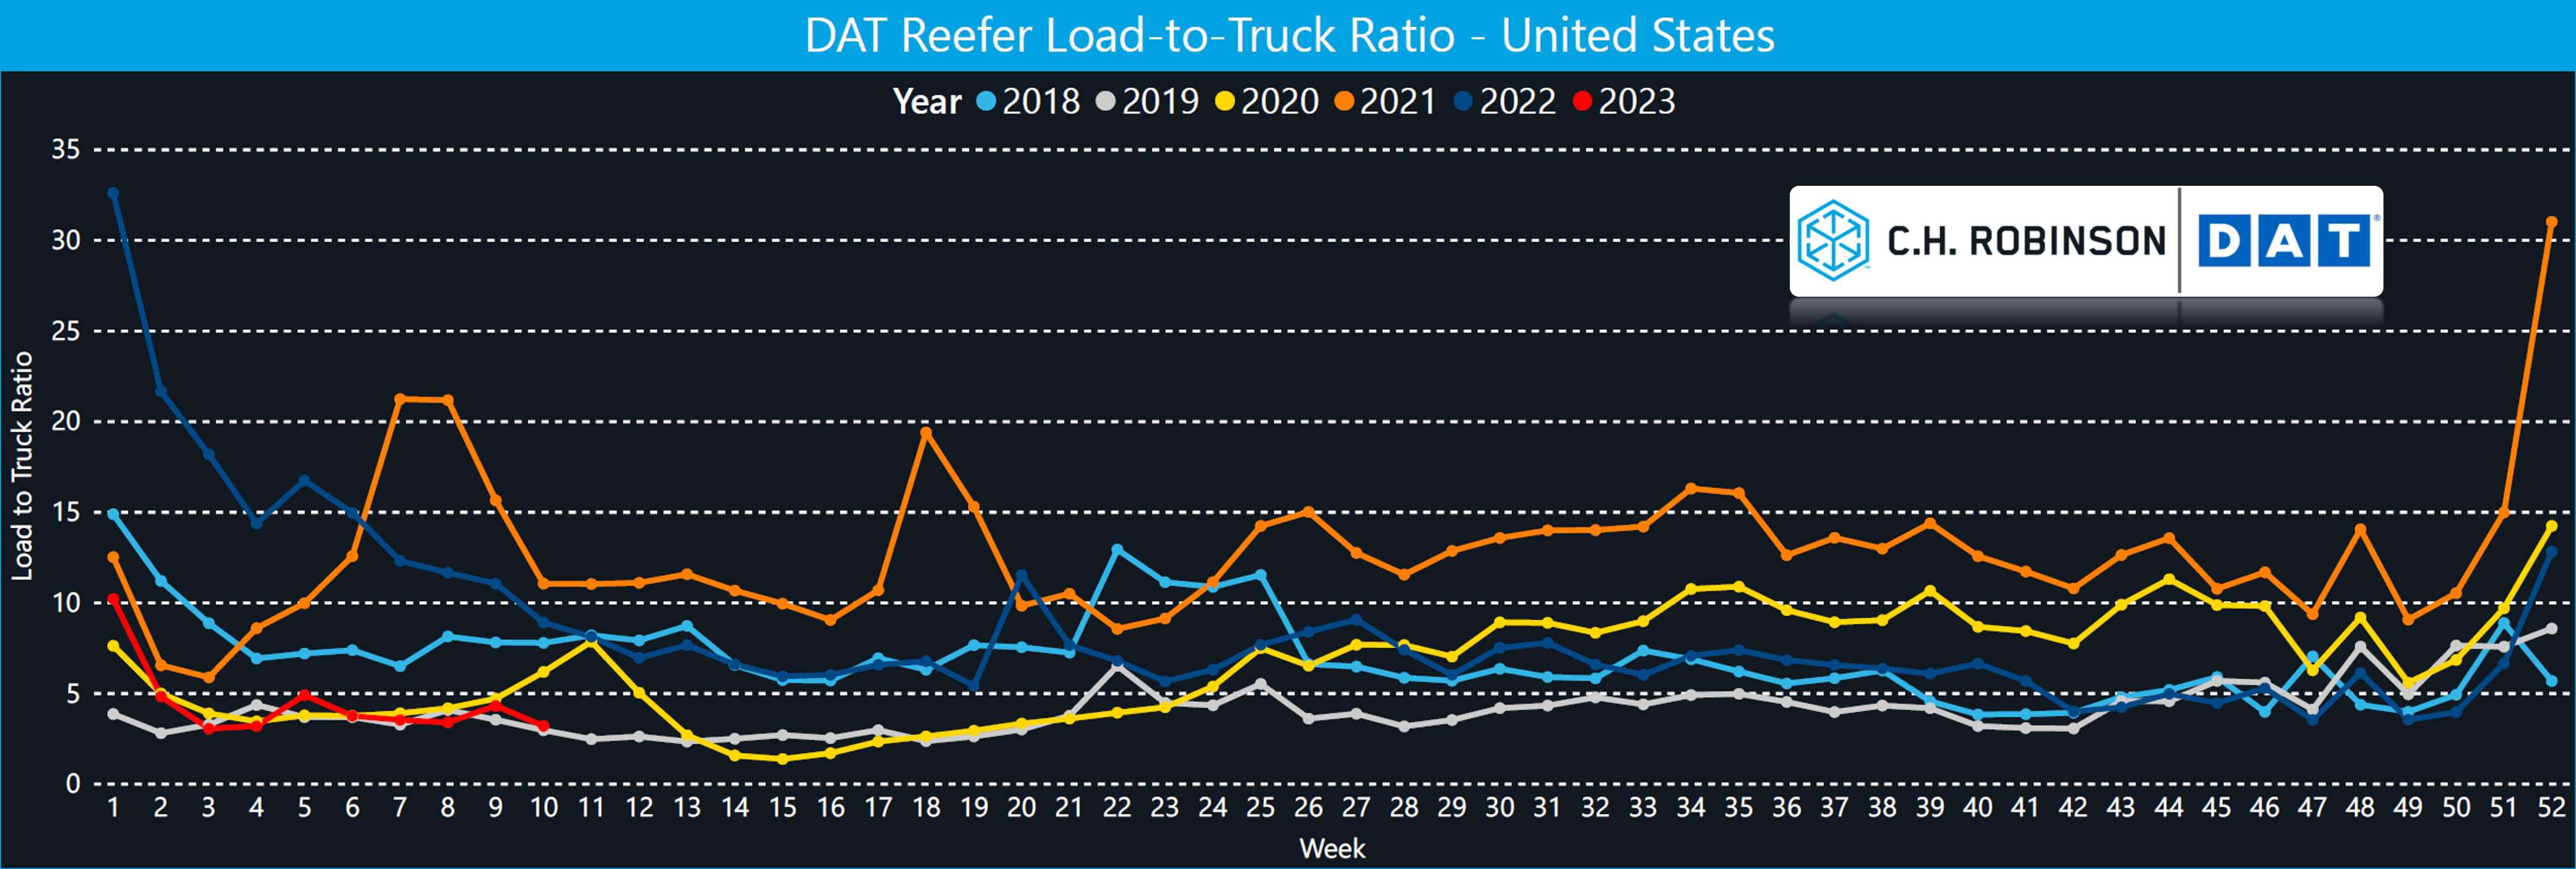 comparação entre carga refrigerada e caminhão 5 anos 